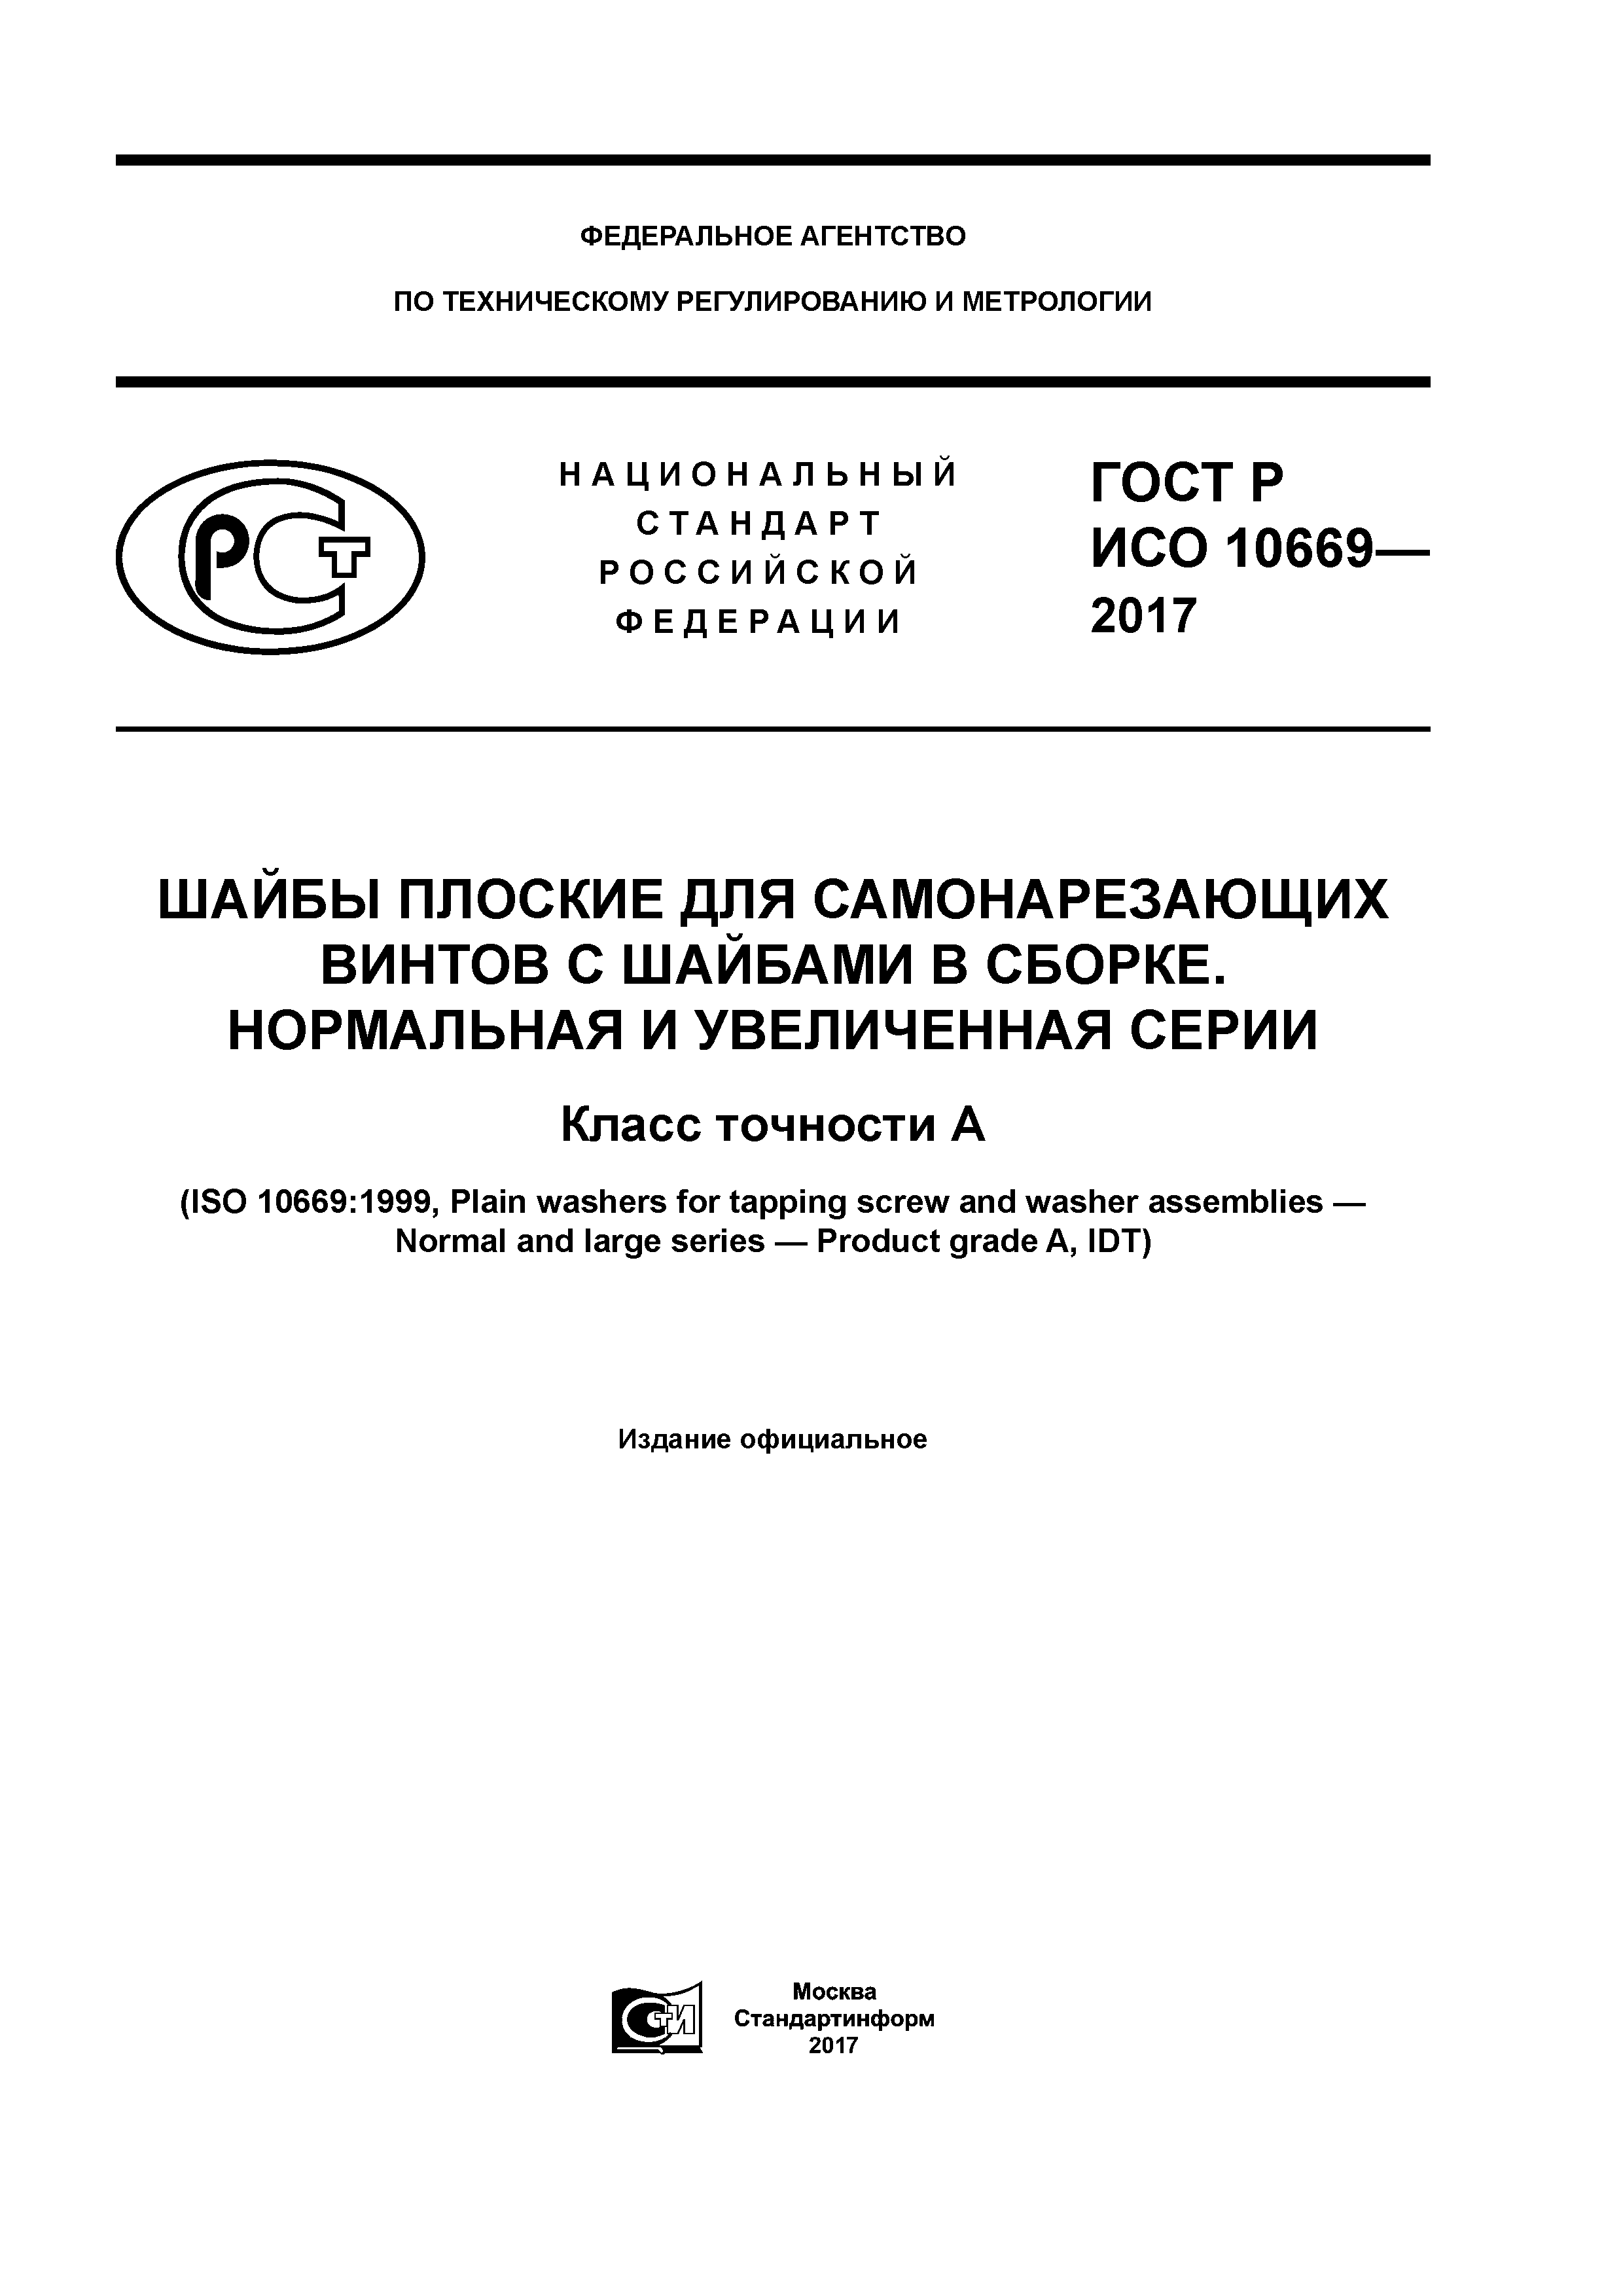 ГОСТ Р ИСО 10669-2017